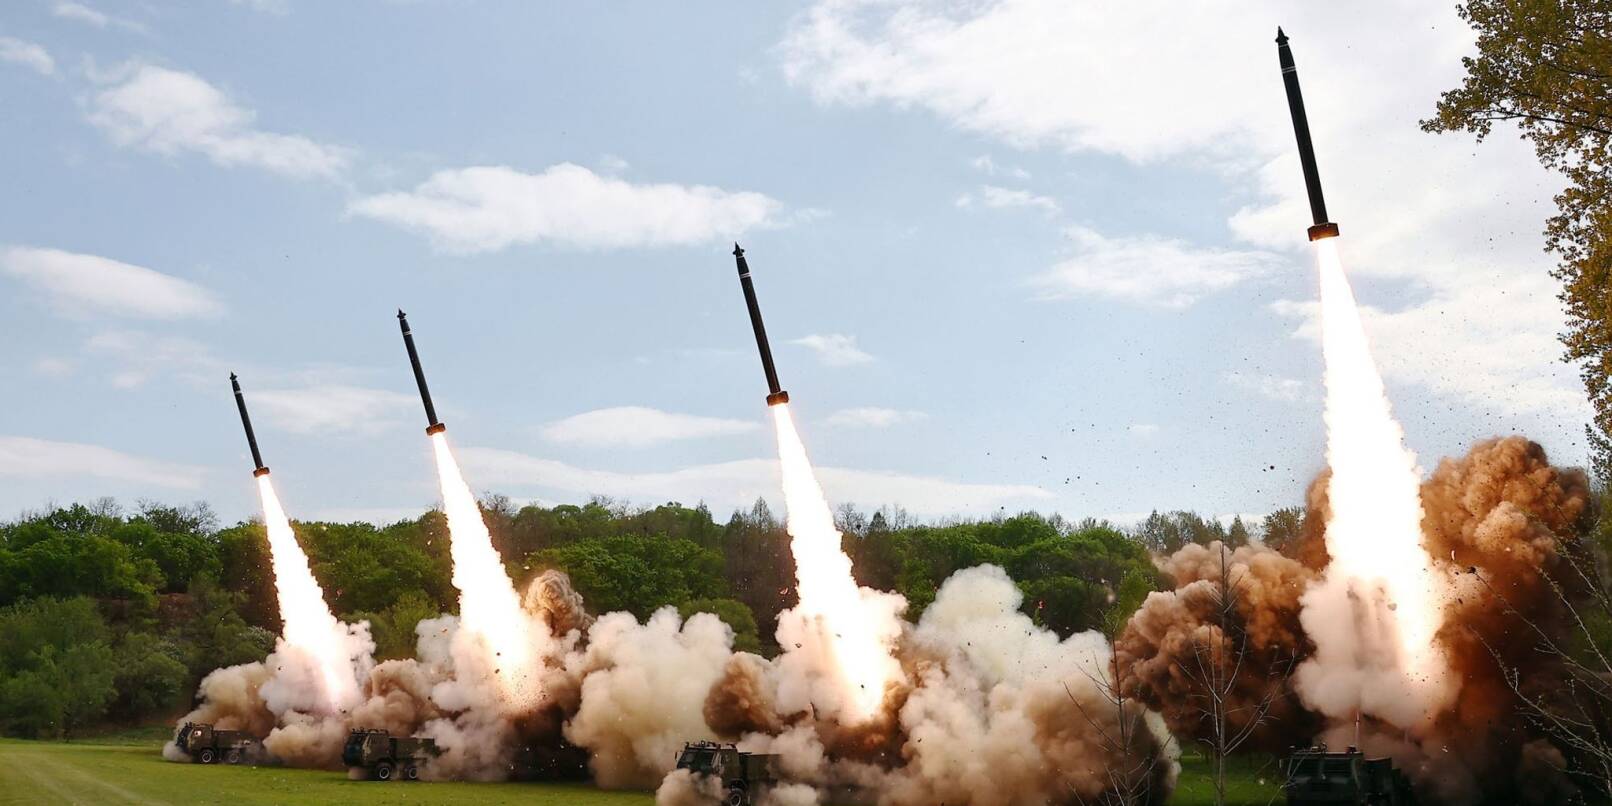 Die von der staatlichen nordkoreanischen Nachrichtenagentur ur Verfügung gestellte Aufnahme sollen eine Raketenübung an einem nicht genannten Ort zeigen.